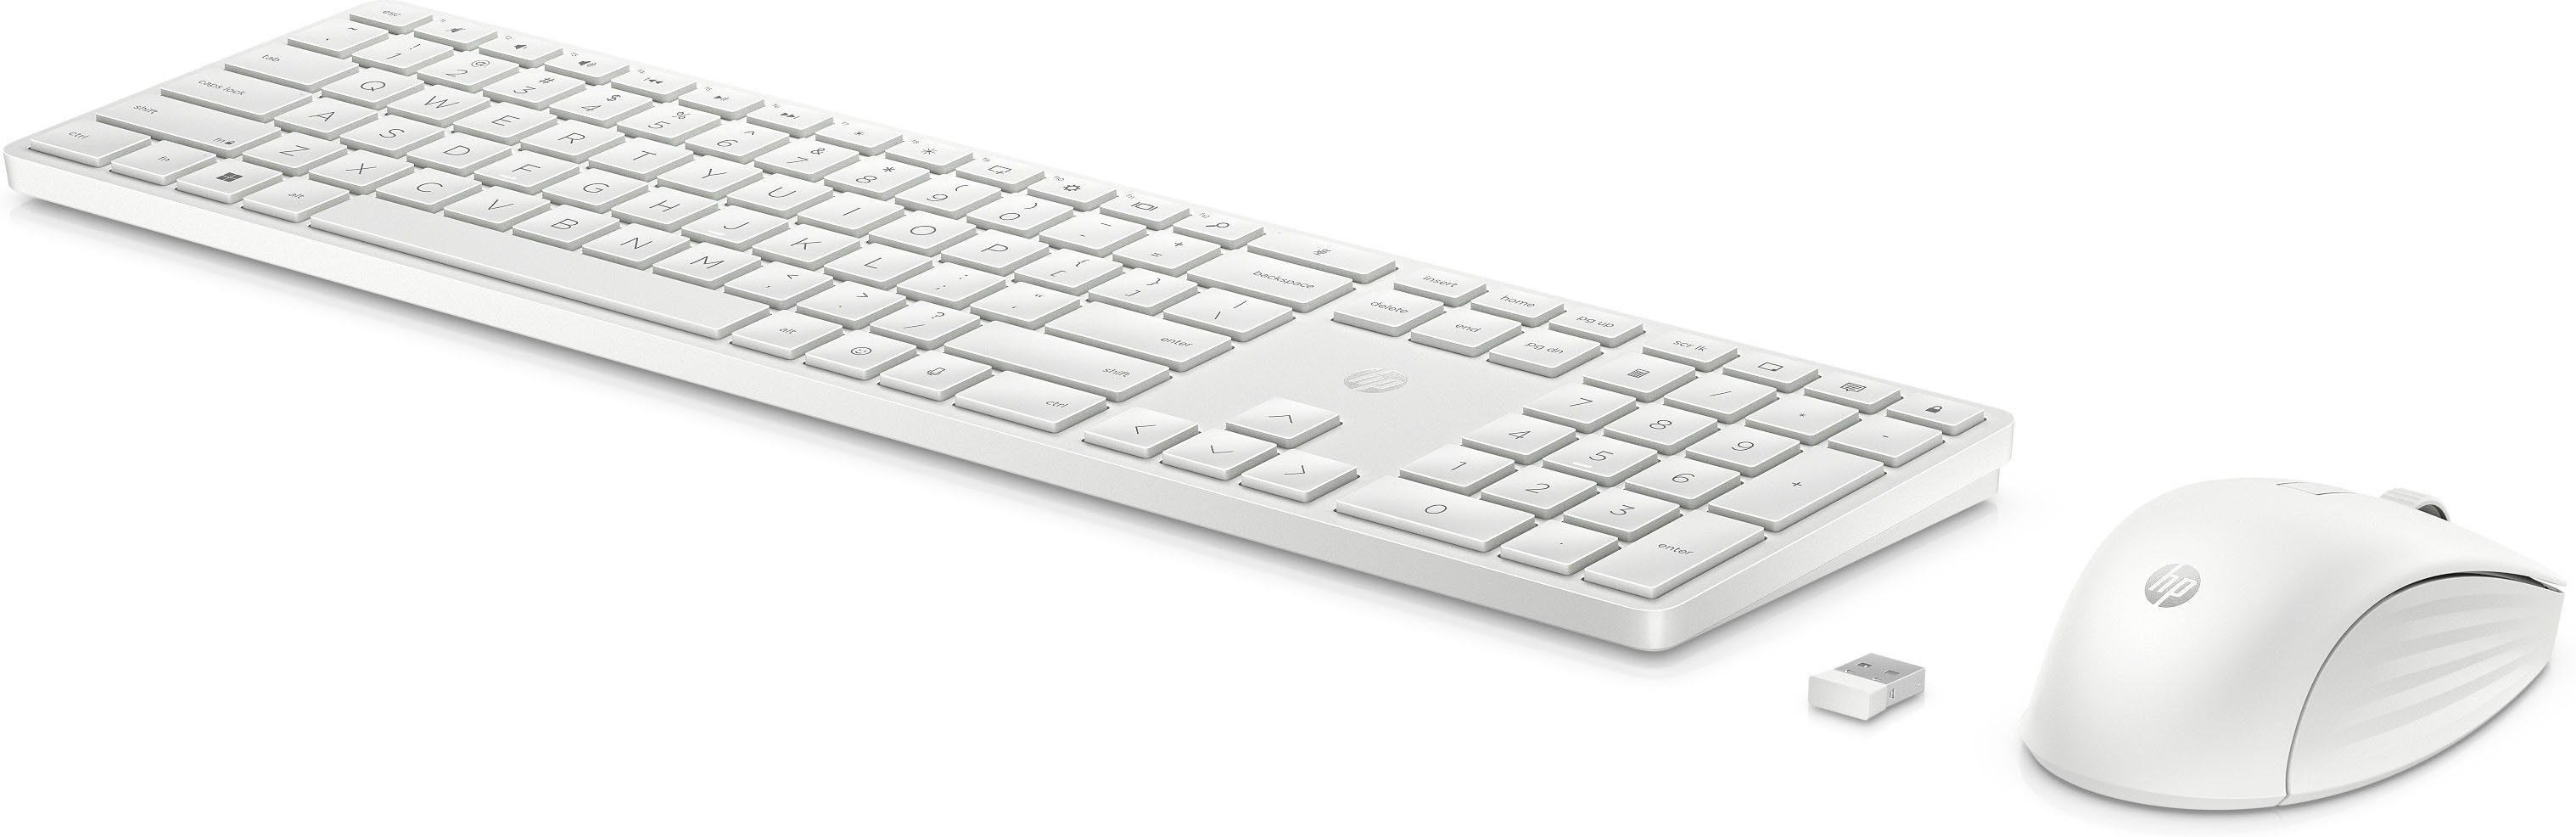 HP 650 Programmierbare Wireless Tastatur- und Maus-Set | Tastatur-Sets